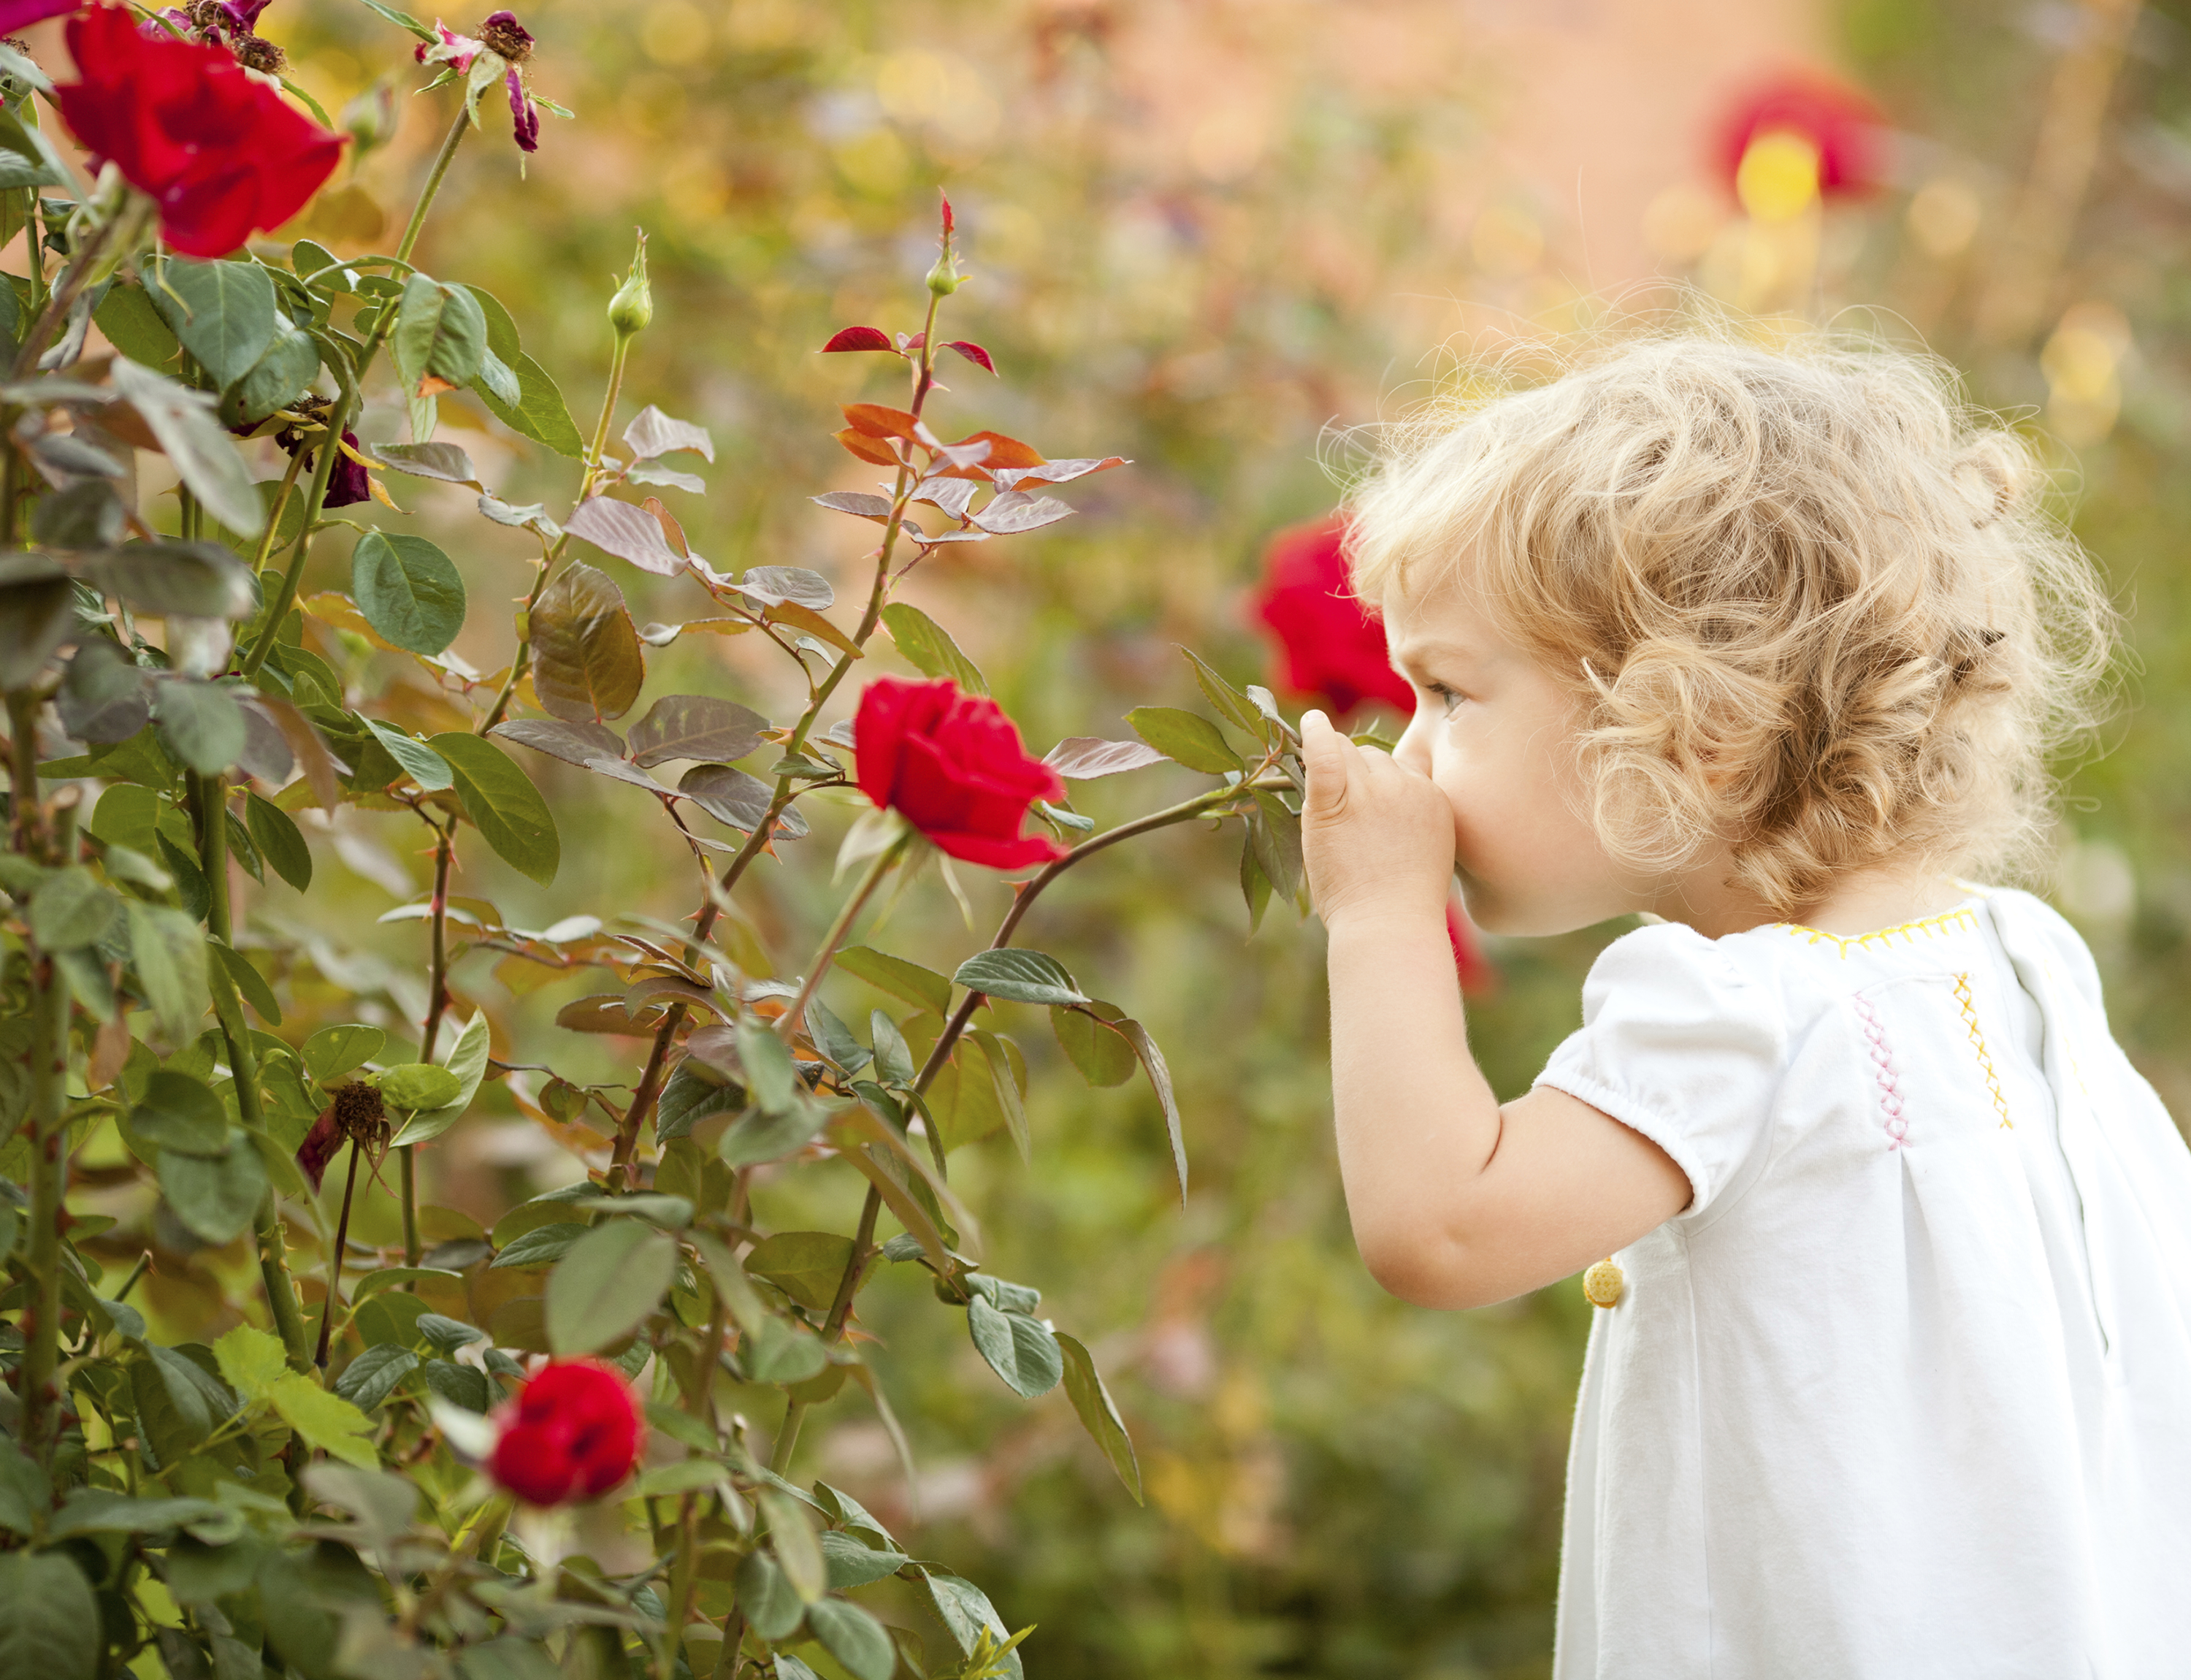 Чувствую запах цветов. Маленькая девочка с розами. Девочка нюхает цветок. Девочка с розами в саду. Люди цветы дети.